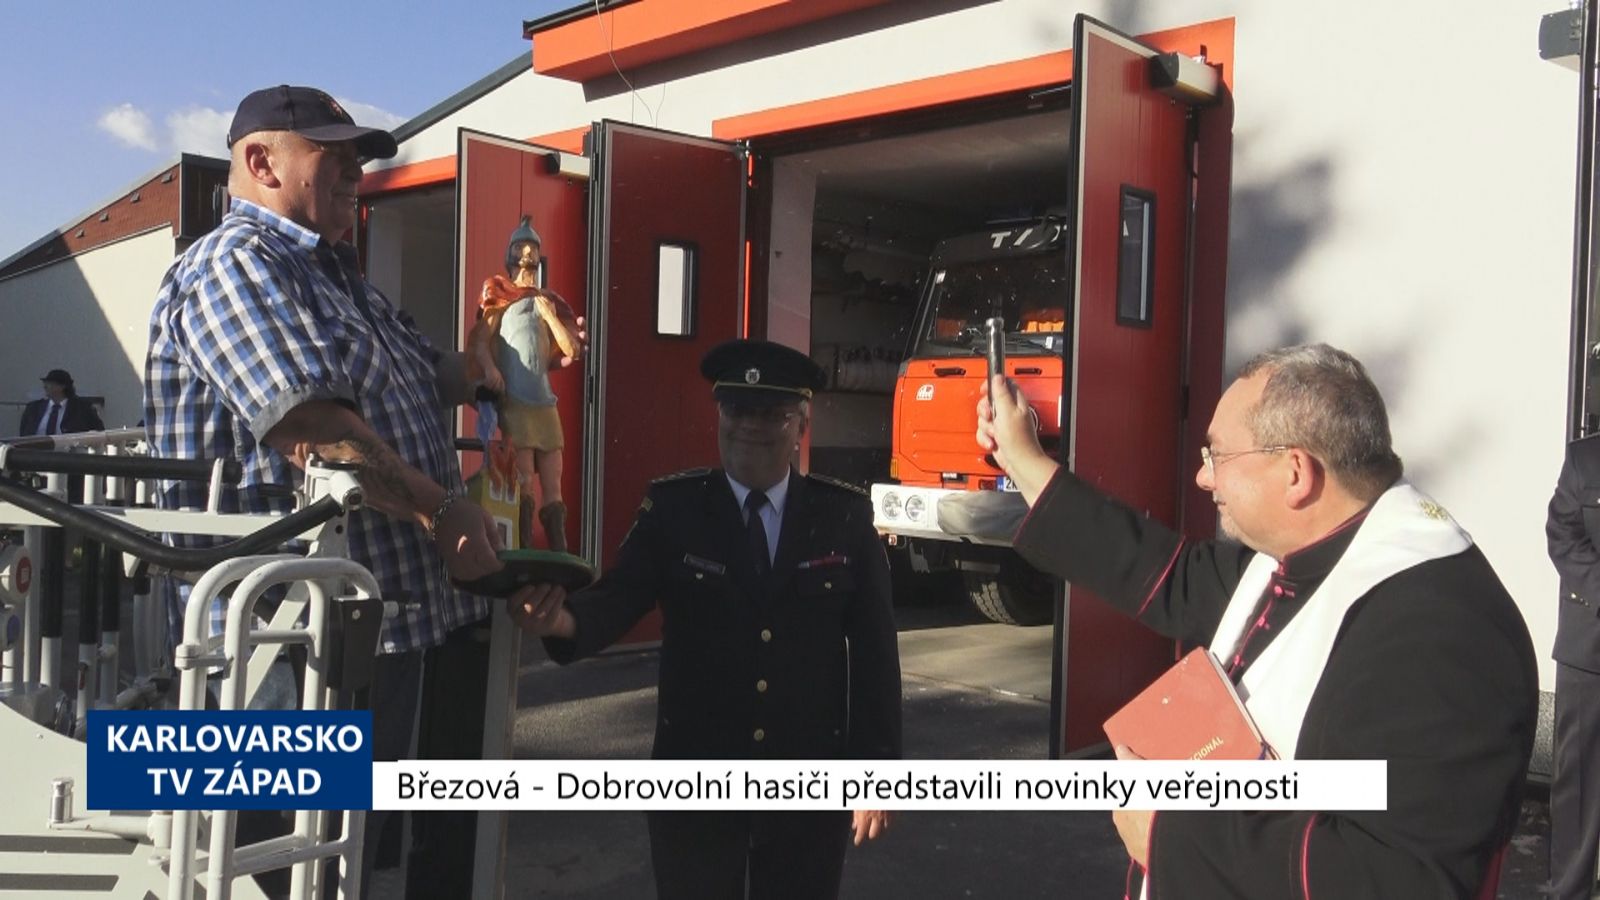 Březová: Dobrovolní hasiči představili novinky veřejnosti (TV Západ)